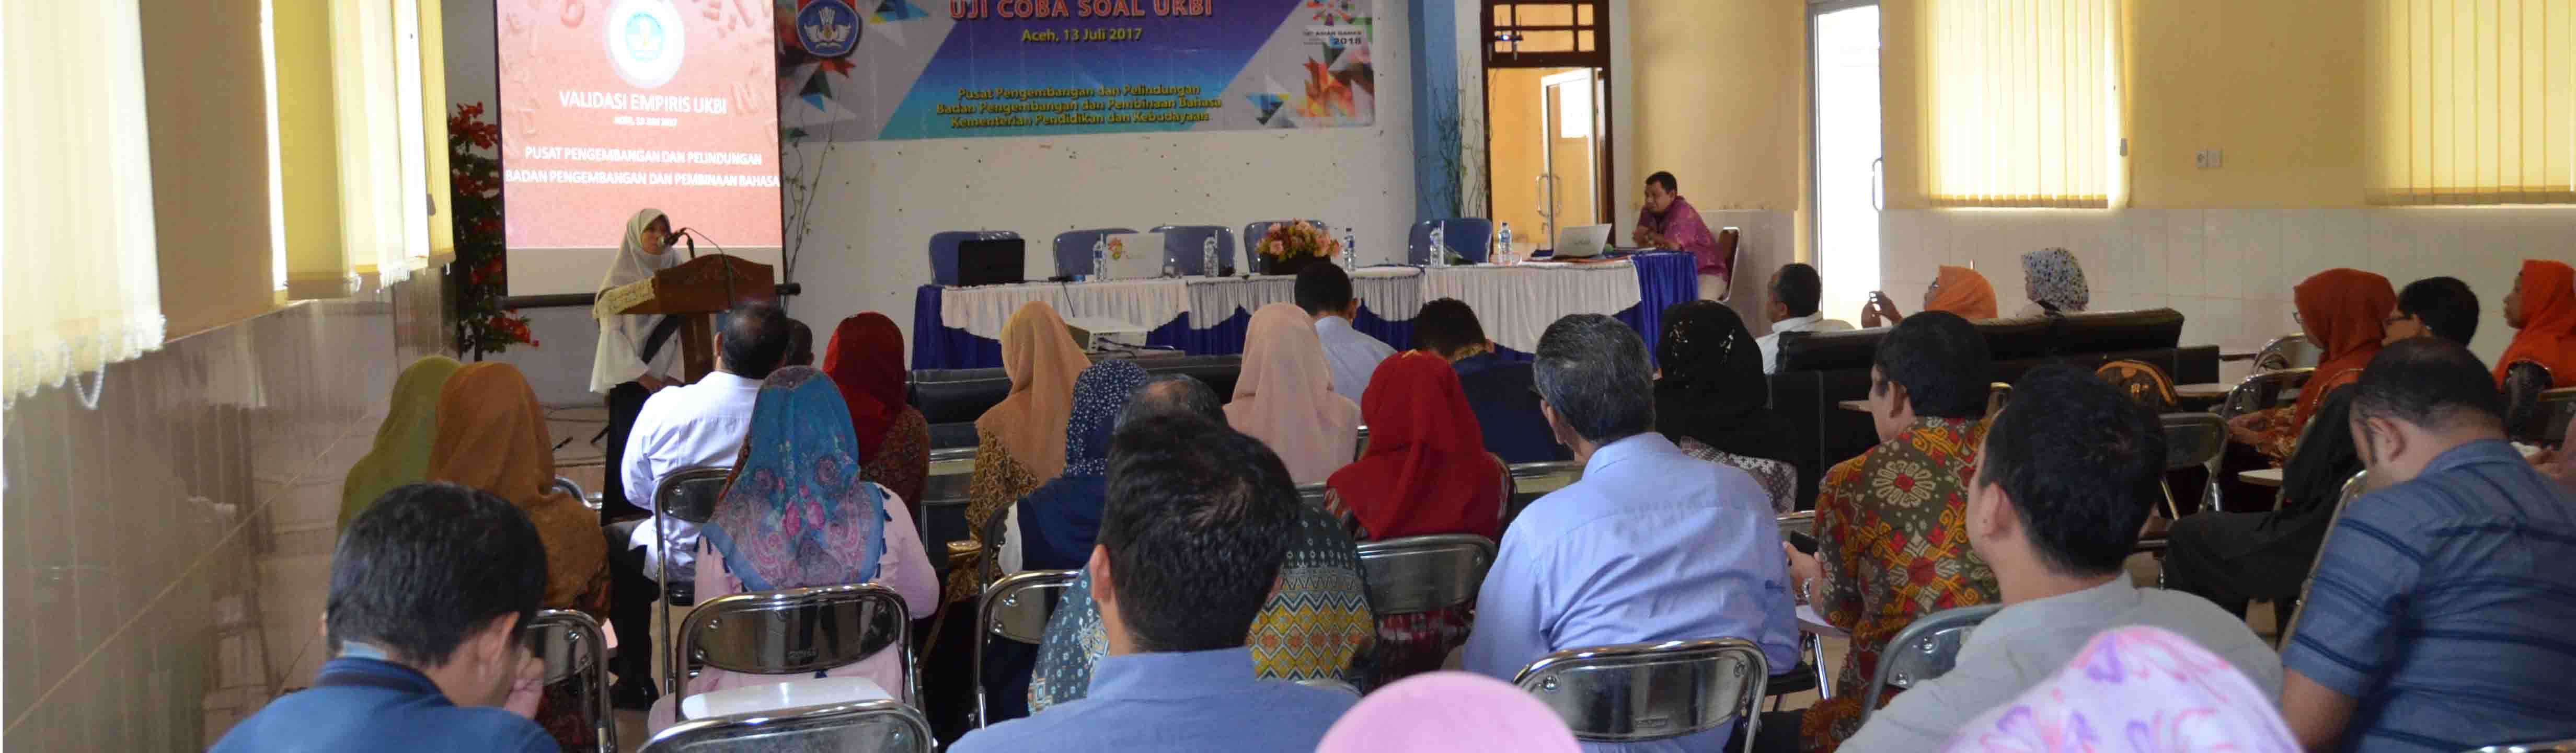 Uji Coba Soal UKBI di Banda Aceh